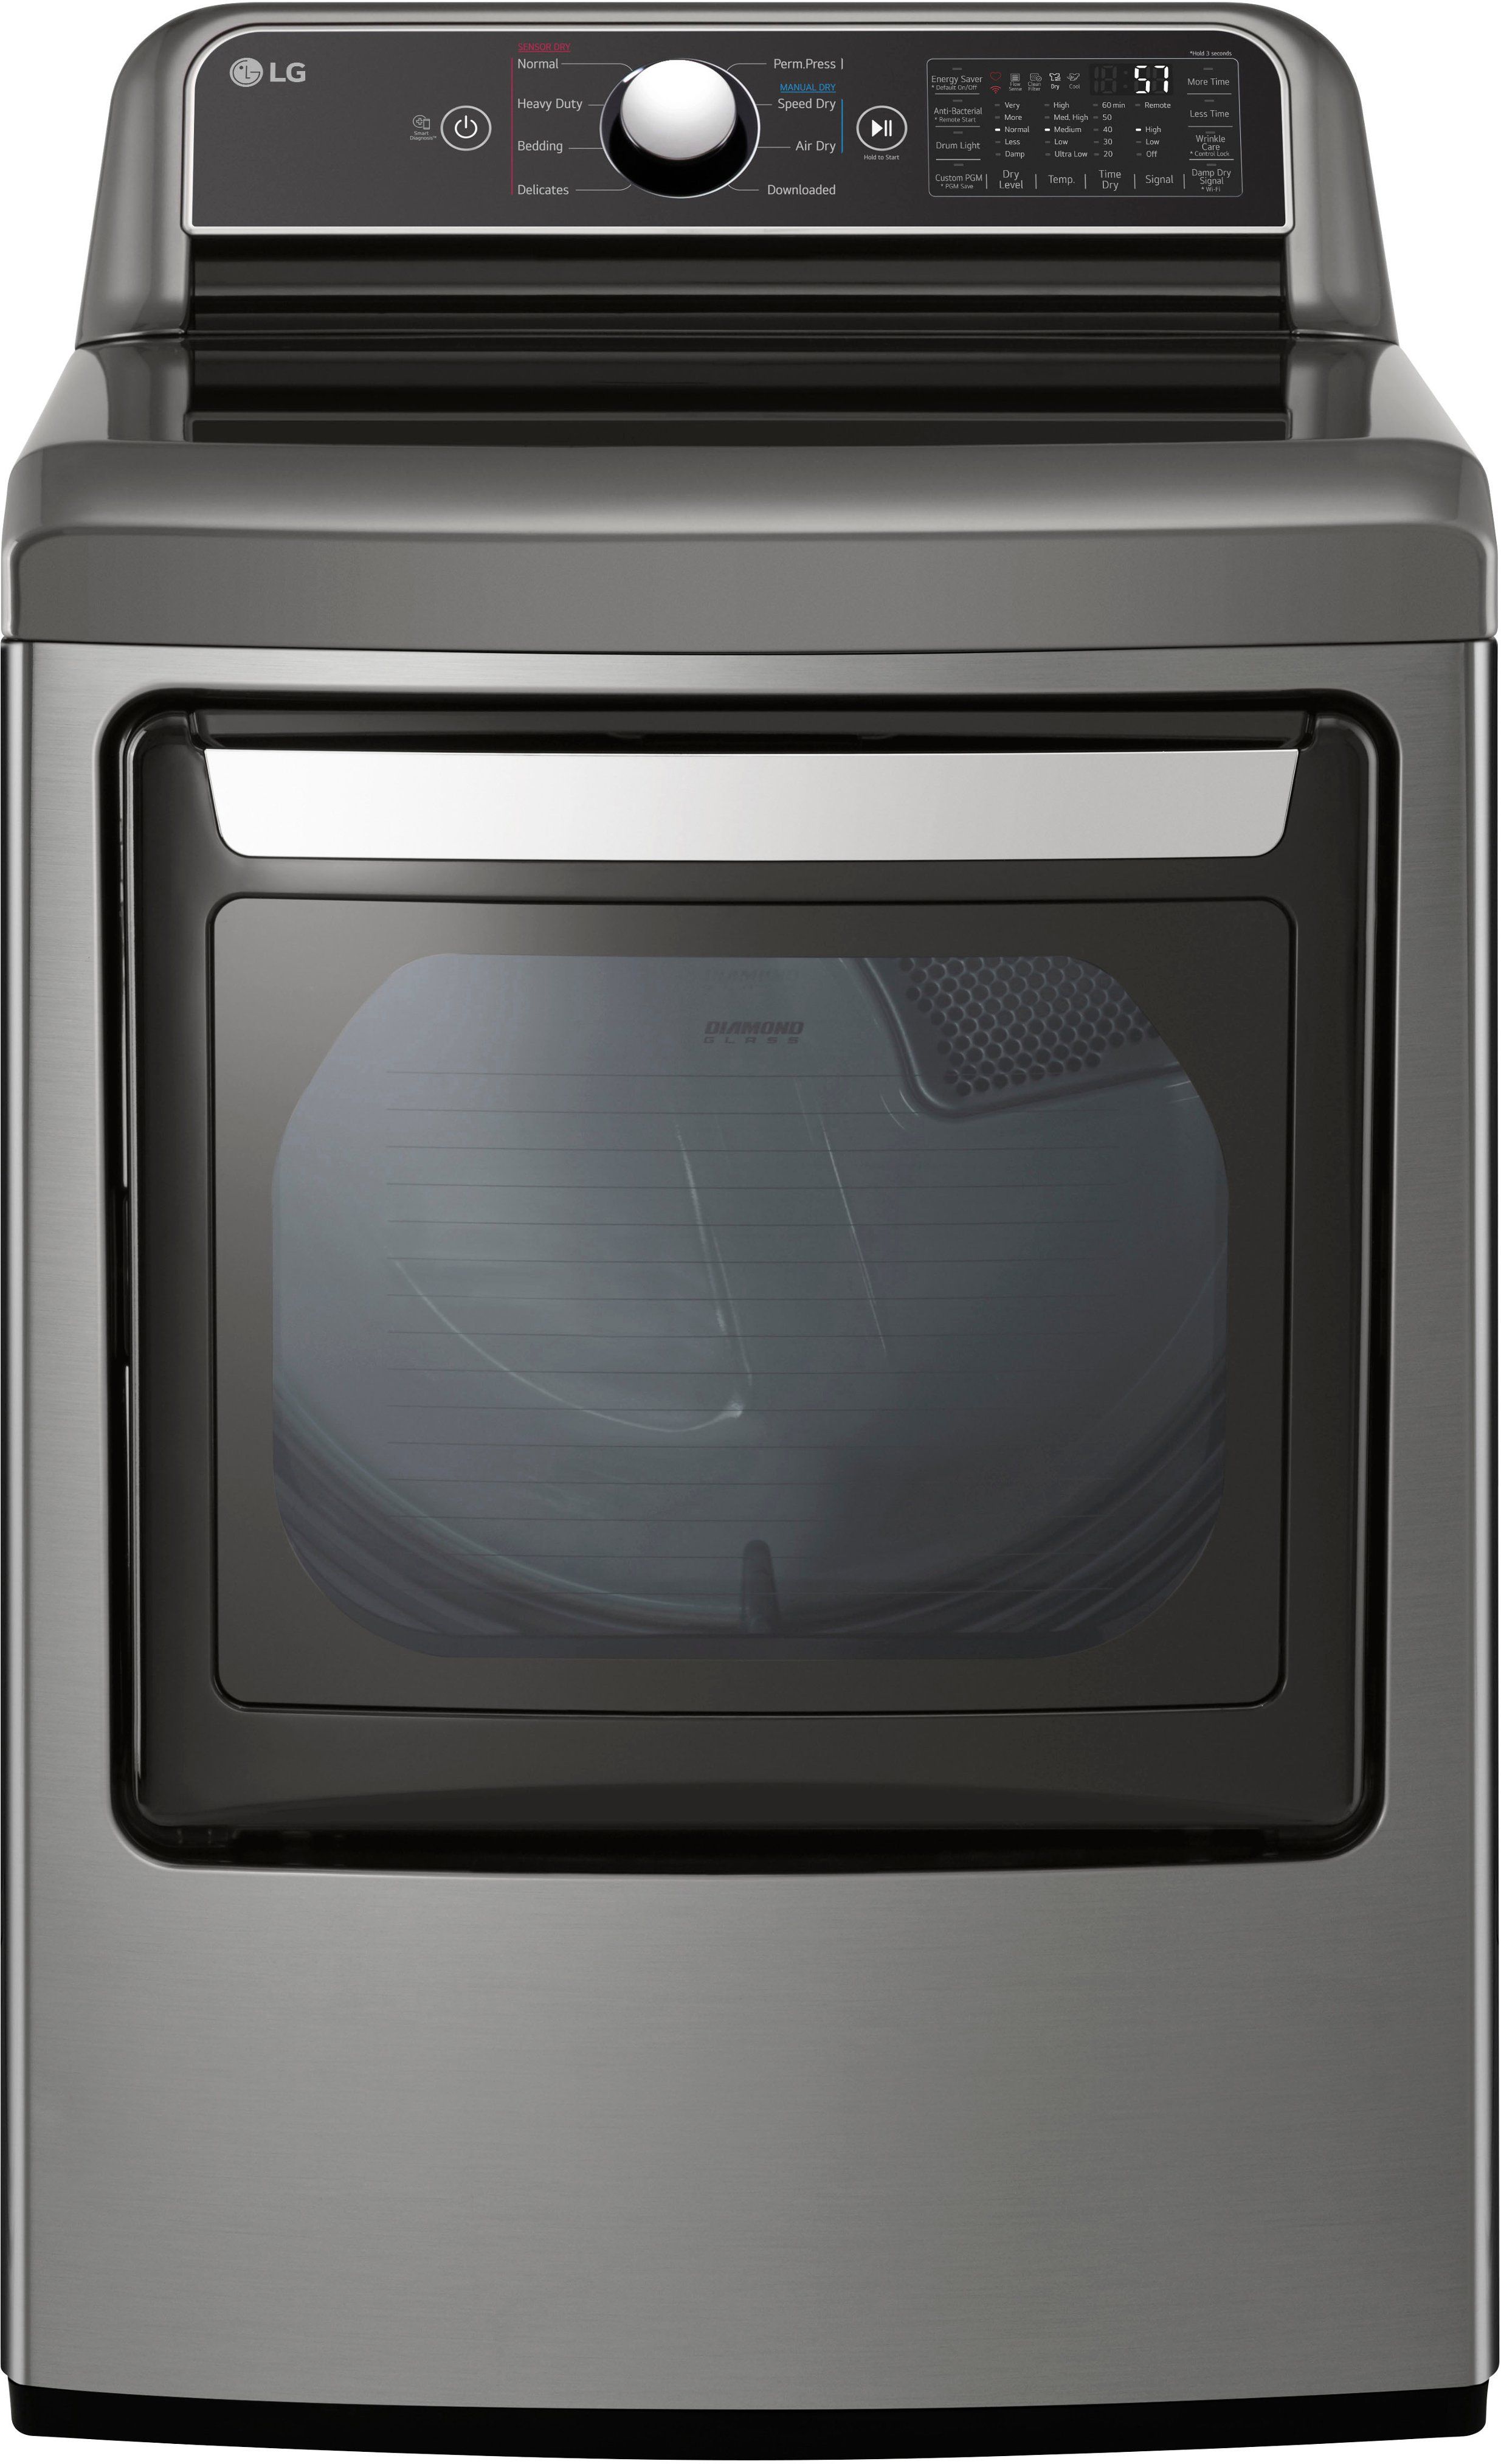 LG 7.3 Cu. Ft. Smart Electric Dryer with EasyLoad Door Graphite Steel DLE7400VE - Best Buy | Best Buy U.S.